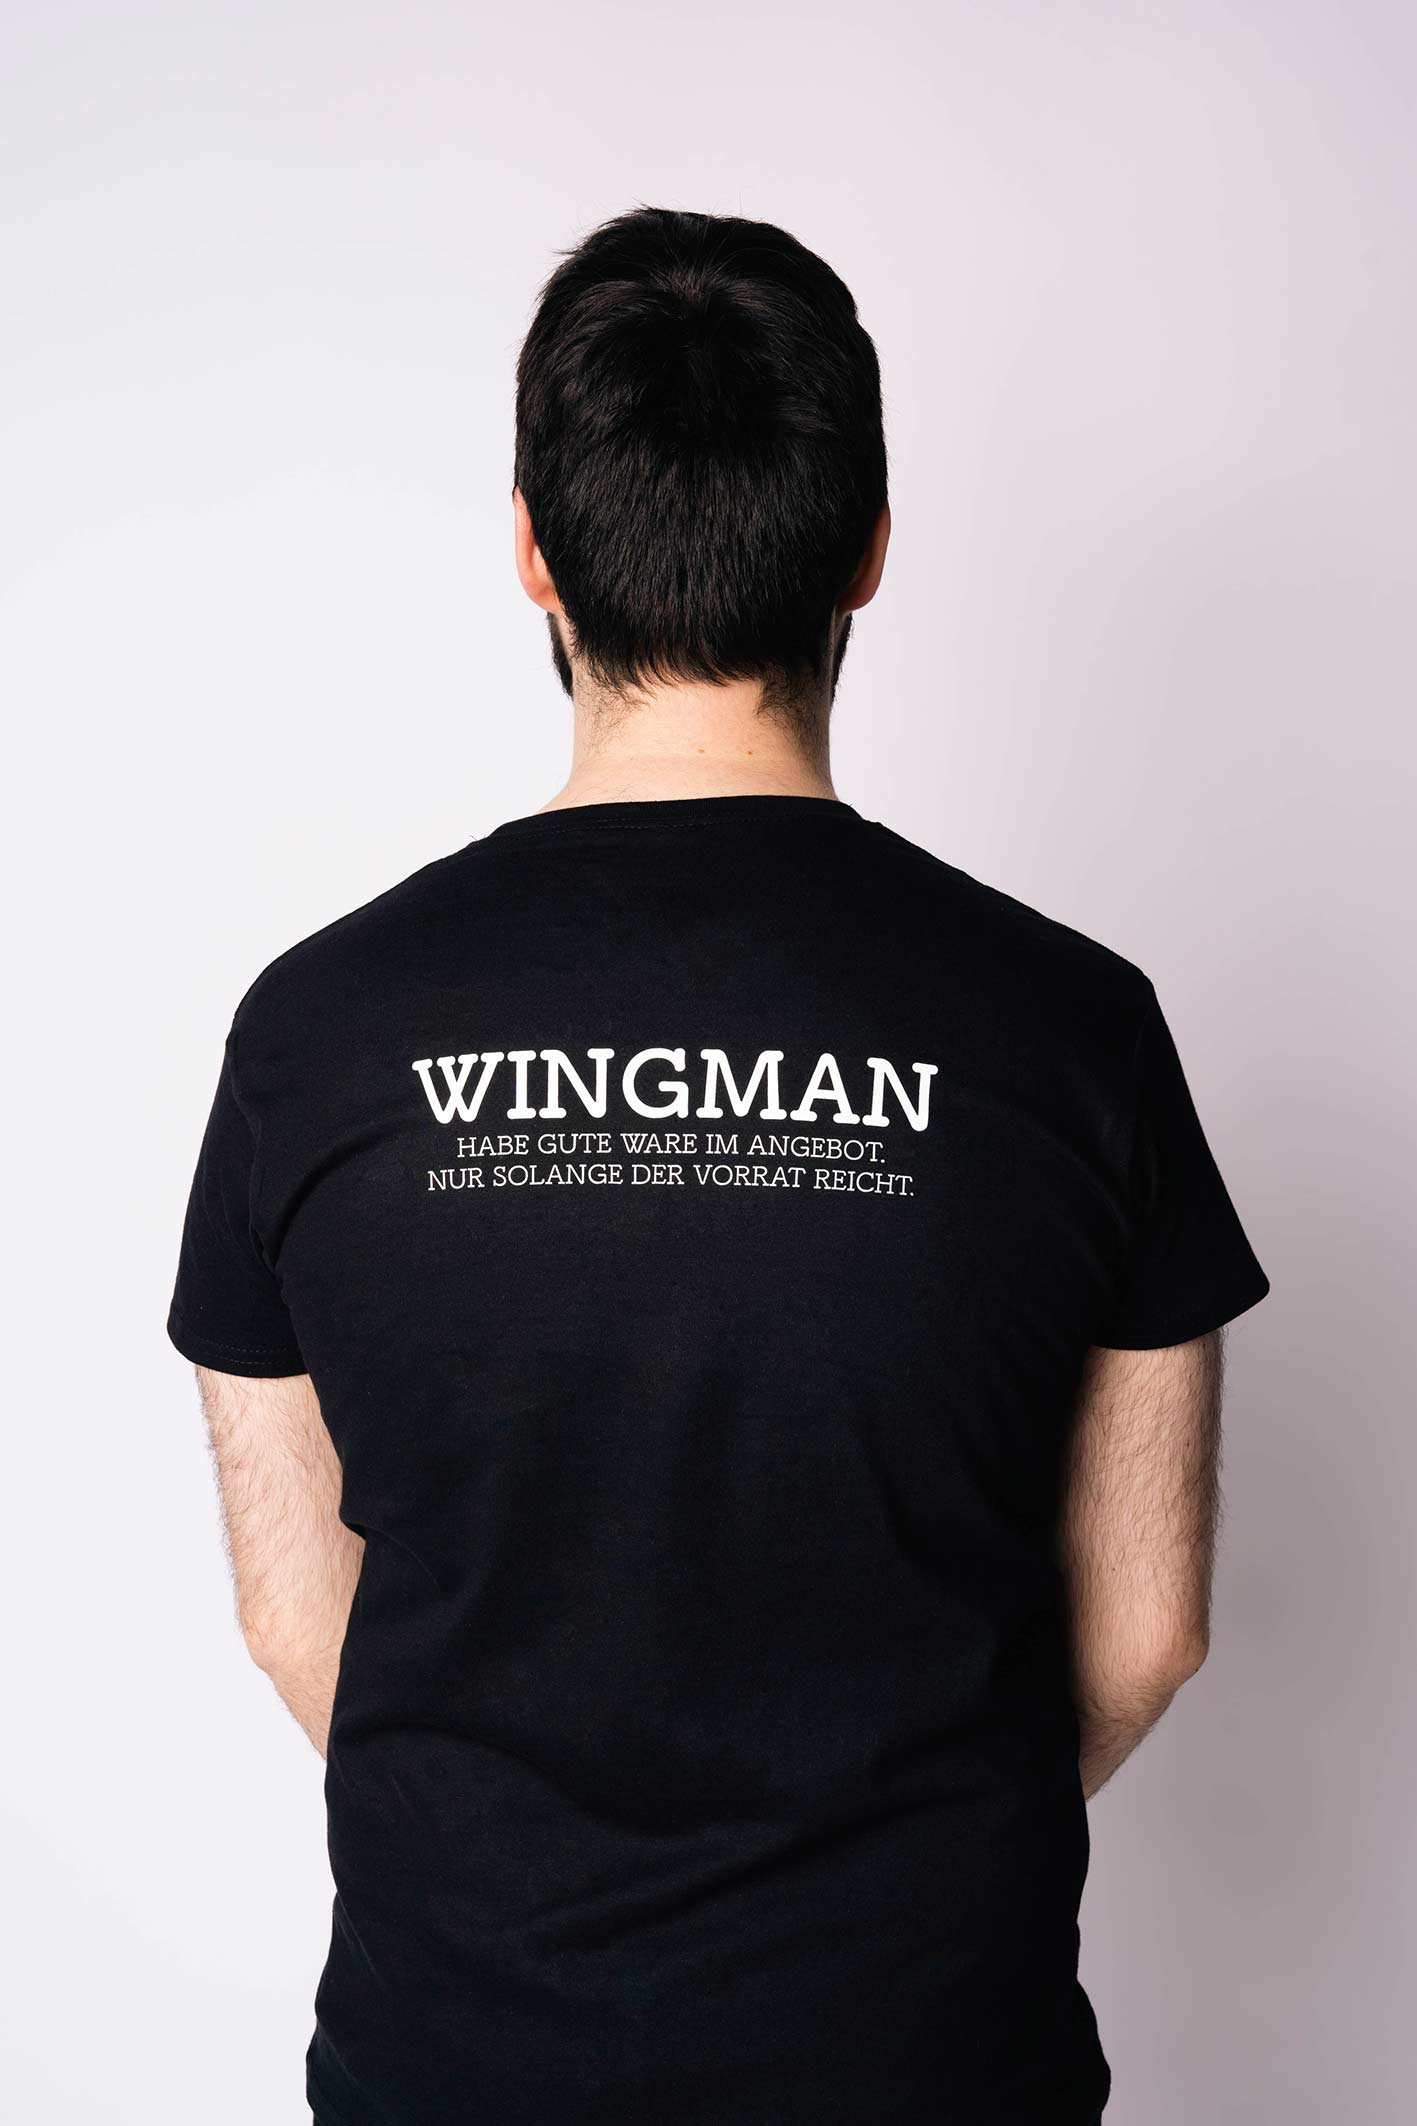 I'm a wingman